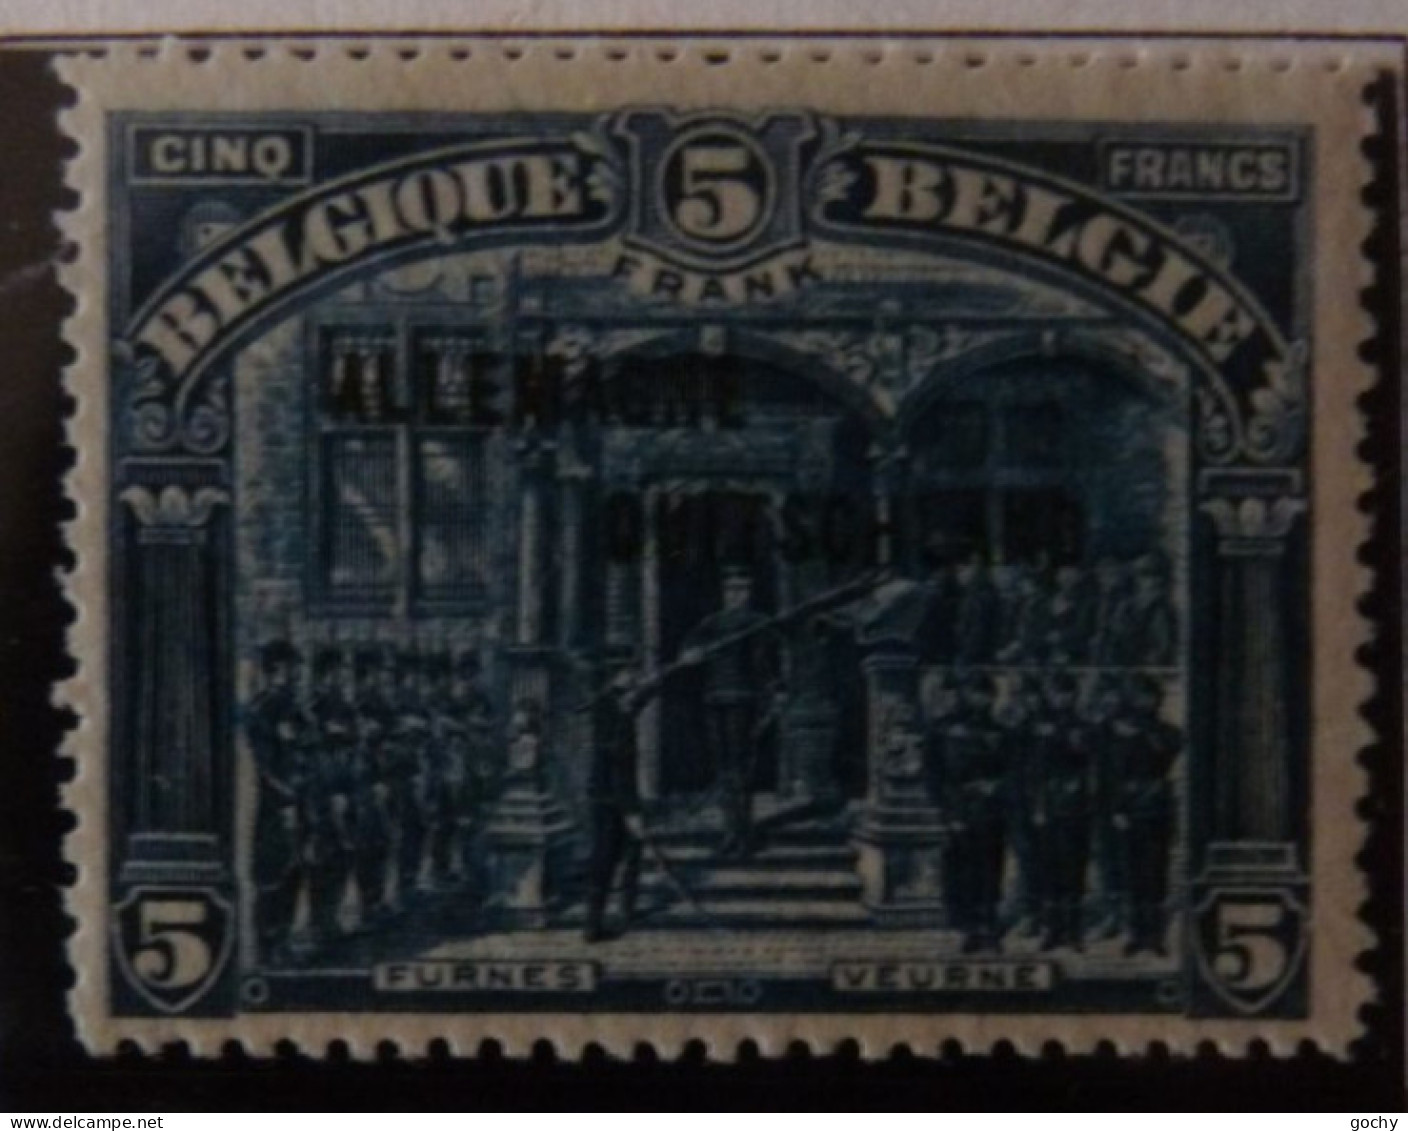 BELGIUM :   1919  - OCCUPATION   OC 38 à 54    */** .  COTE: 418,00€  (54**) - OC38/54 Belgische Besetzung In Deutschland